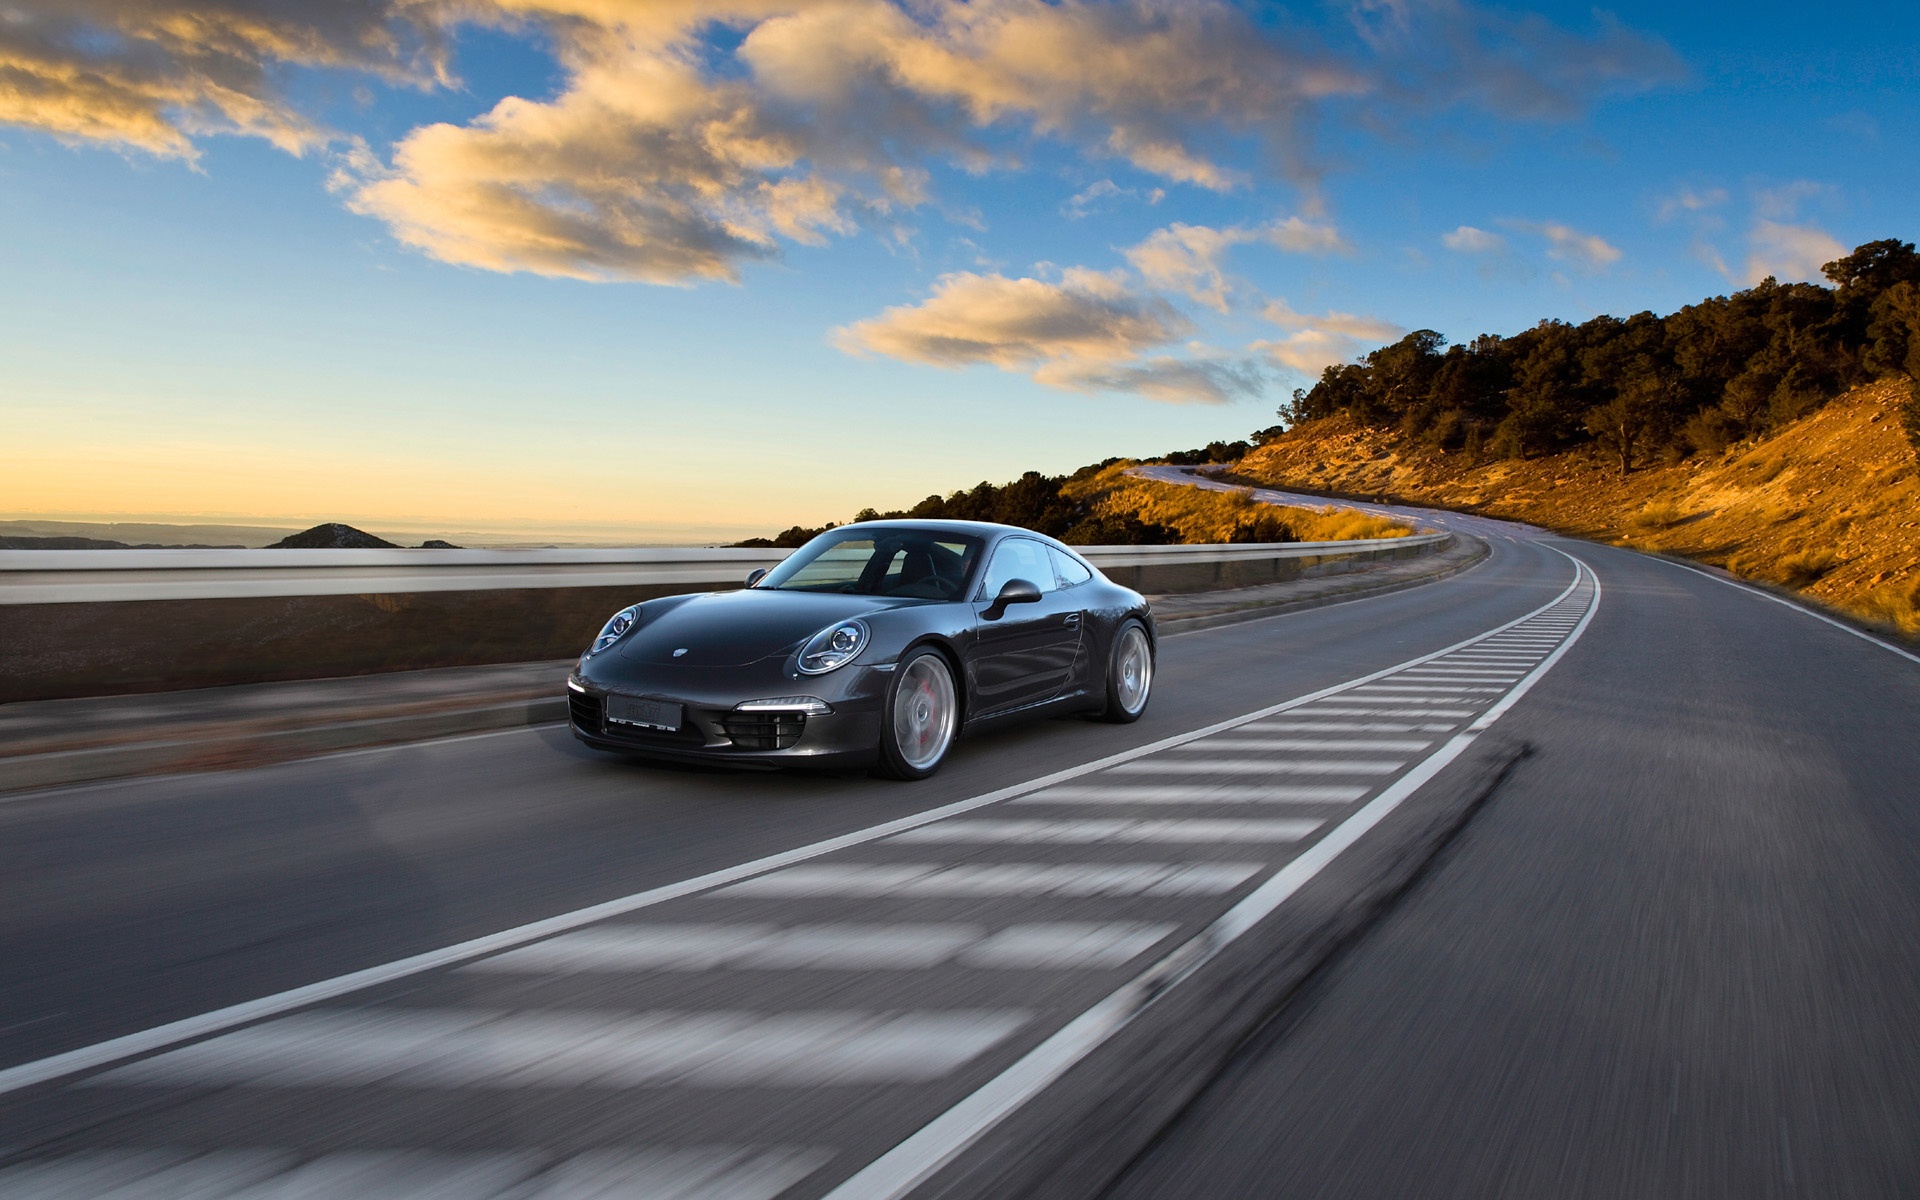 Descarga gratuita de fondo de pantalla para móvil de Porsche, Carretera, Vehículos, Coche.